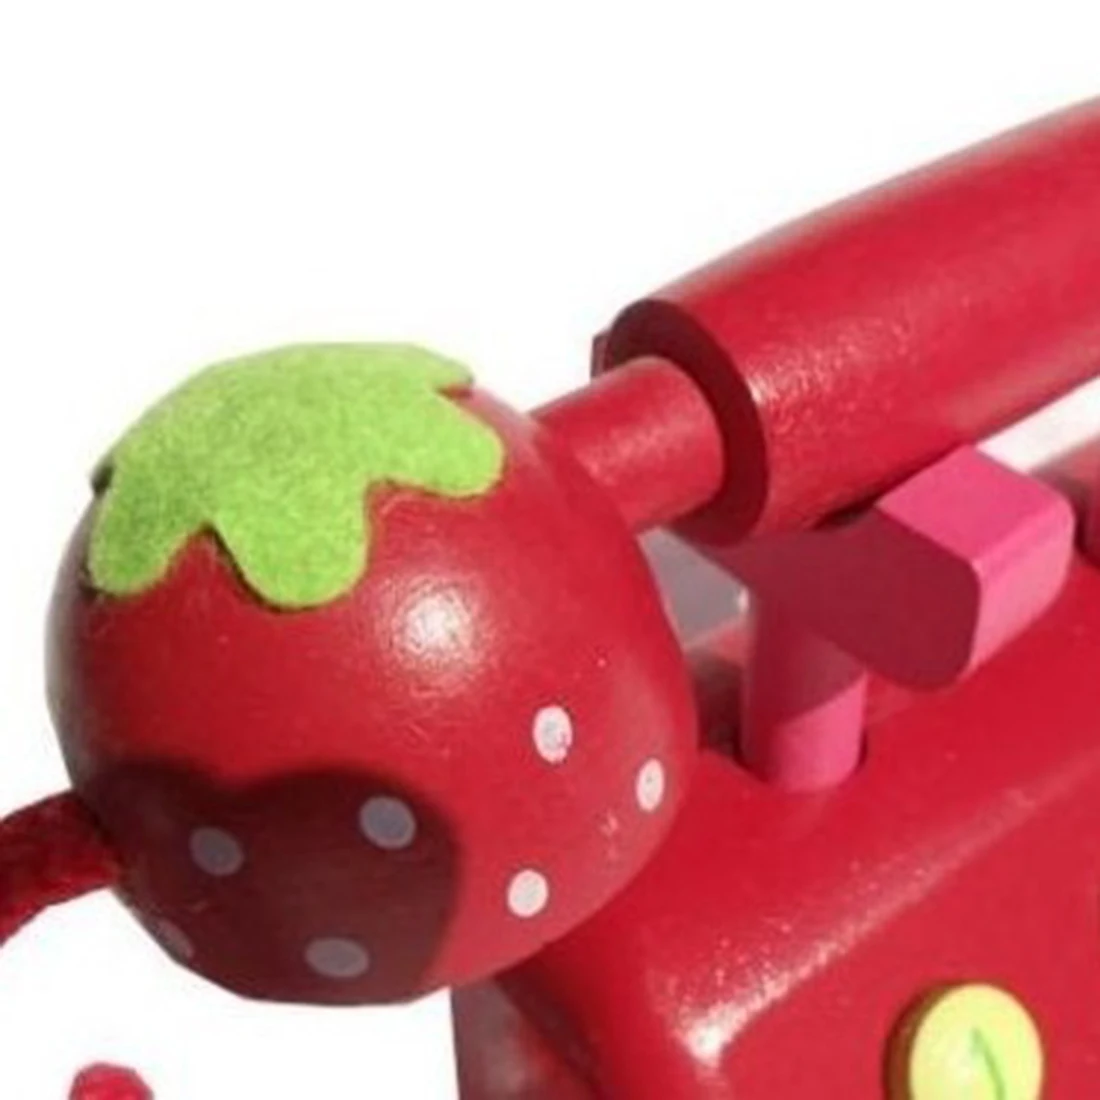 Дети моделирование деревянный телефон ролевые игры раннего образования подарок мебель игрушка с клубничным узором-красный/розовый